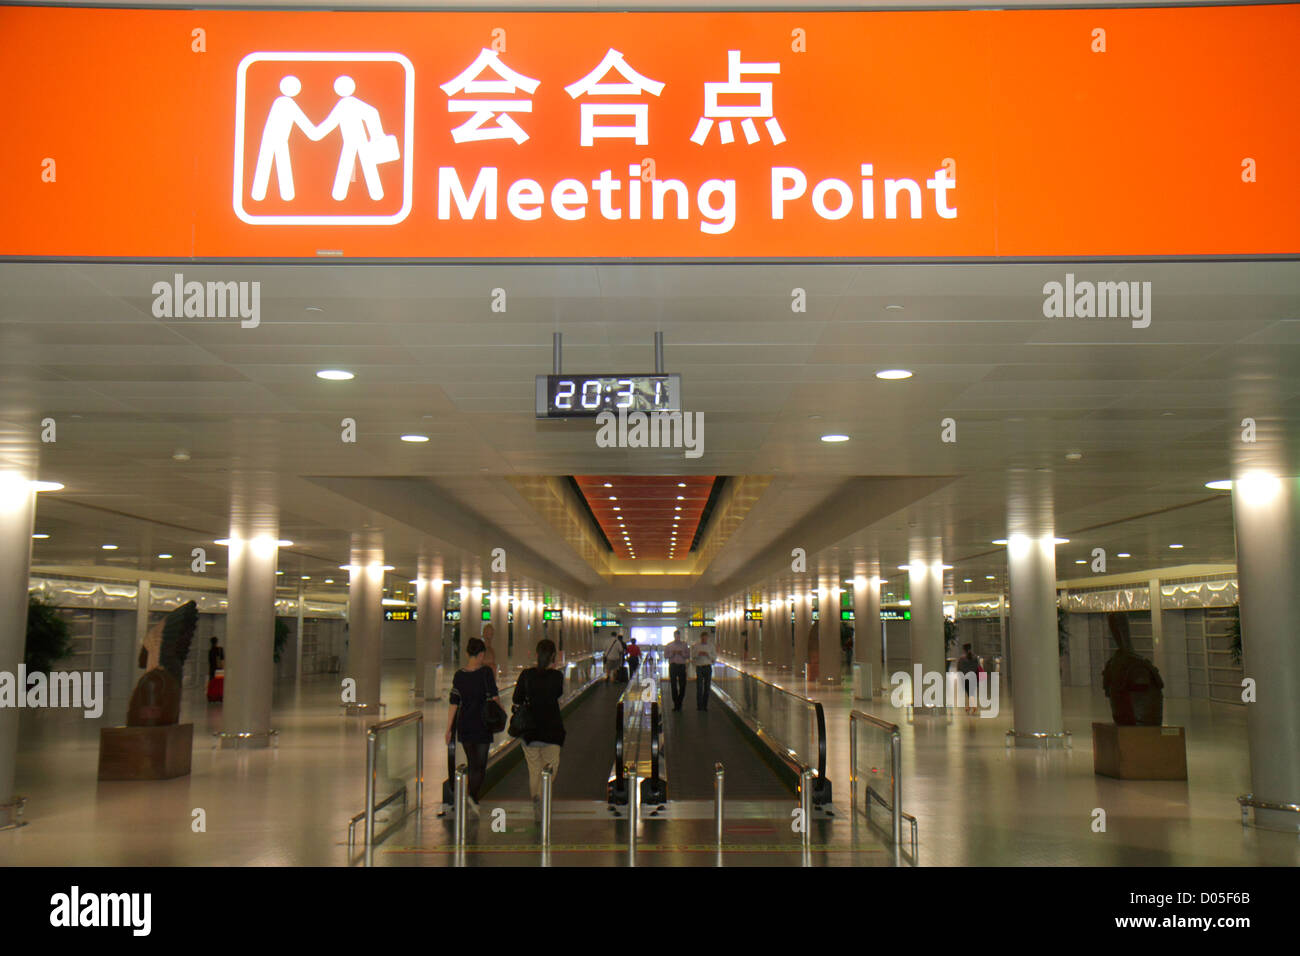 Shanghai Chine,aéroport international de Pudong chinois,PVG,porte,terminal,symboles mandarin chinois,hanzi,han,caractères,signe,information,point de rencontre,mov Banque D'Images